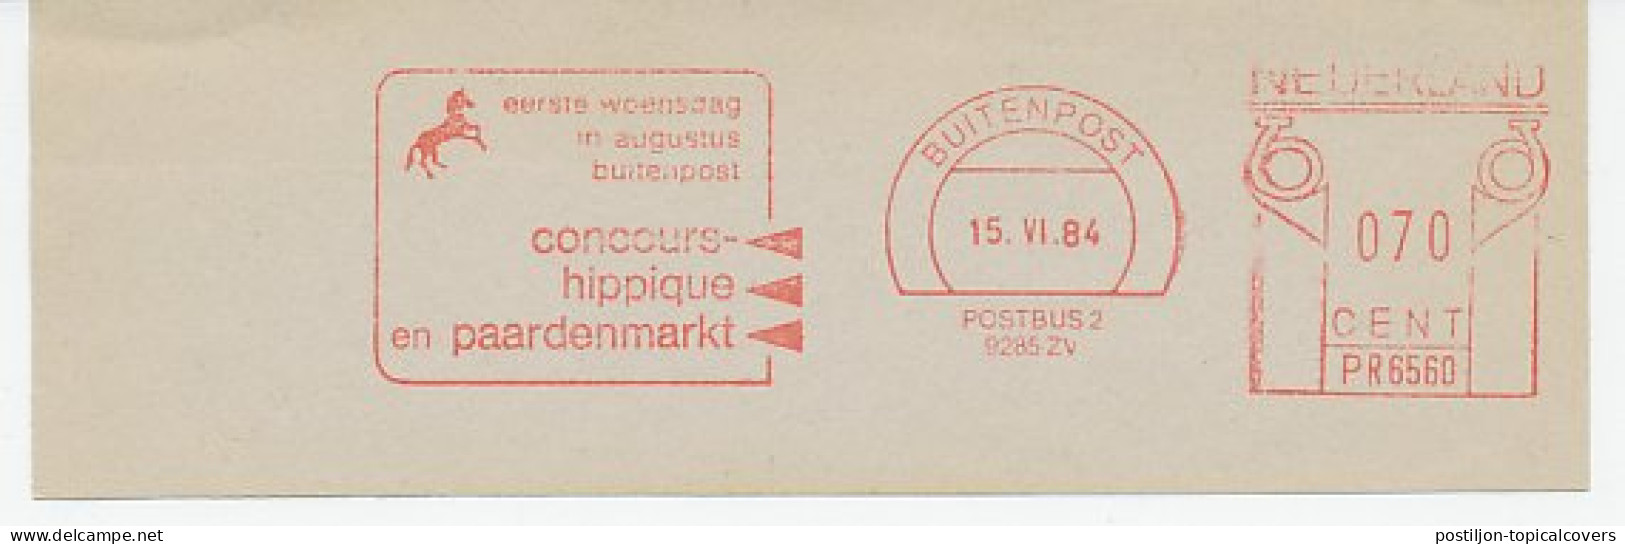 Meter Cut Netherlands 1984 Horse Contest - Horse Market - Concours Hippique - Hippisme